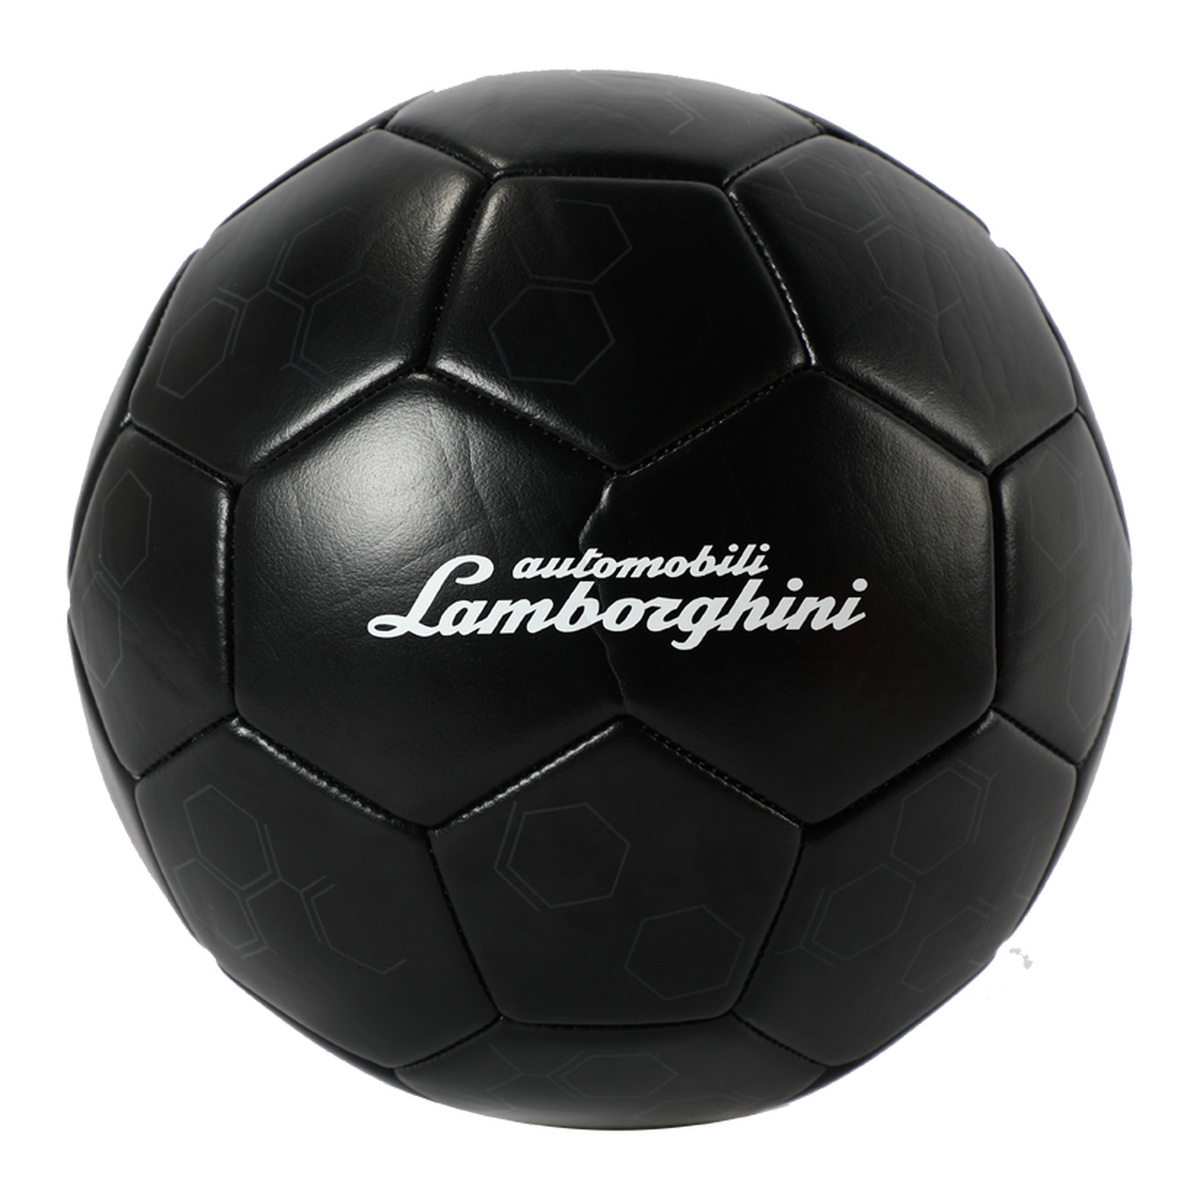 Lamborghini Pvc Football, Size 5, Black, LFB552-5B